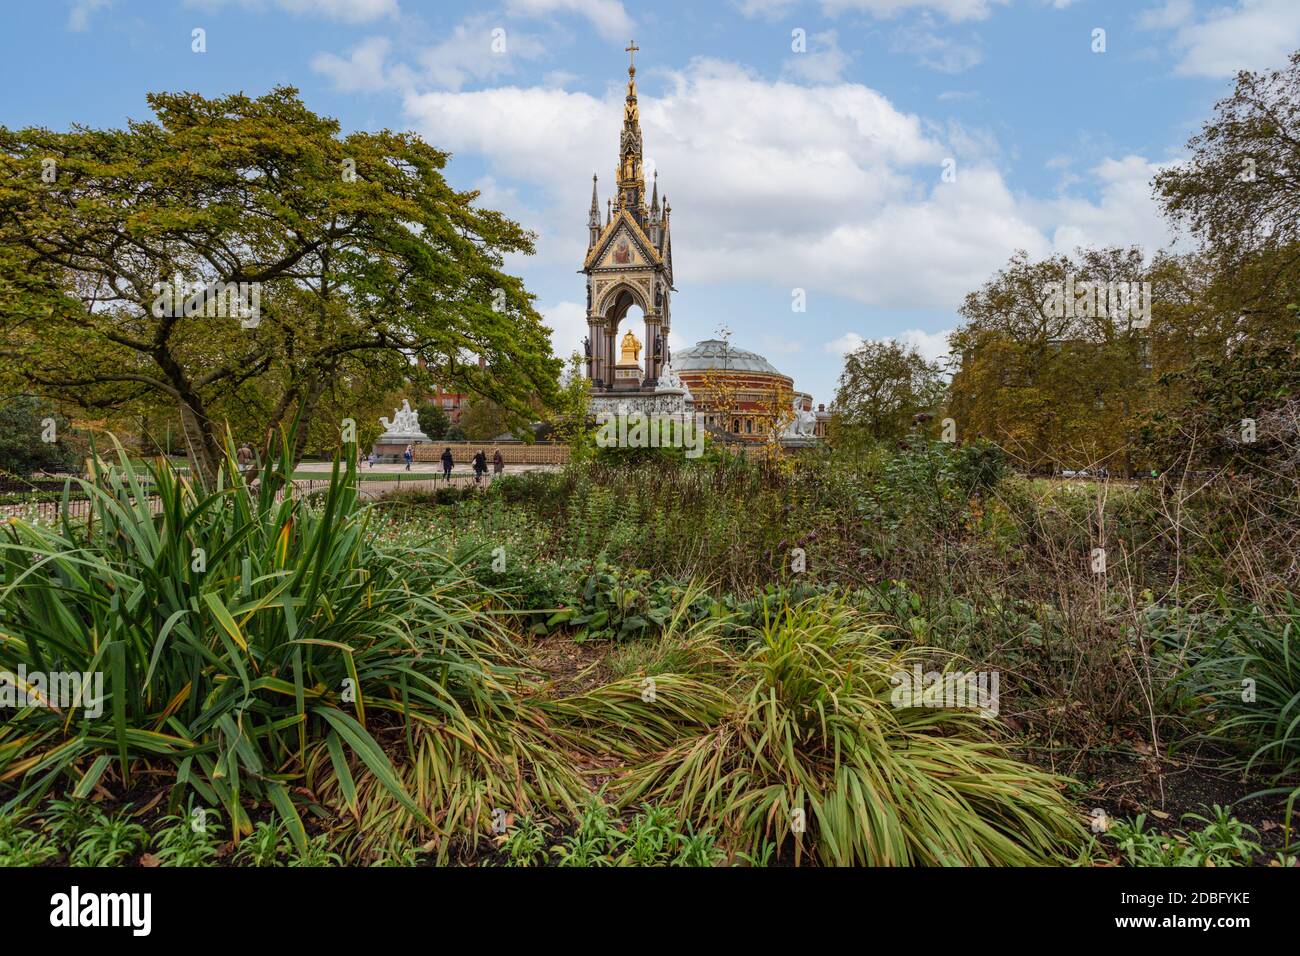 Vue sur l'Albert Memorial à l'intérieur de Kensington Gardens, Londres. Photographié en automne. Banque D'Images